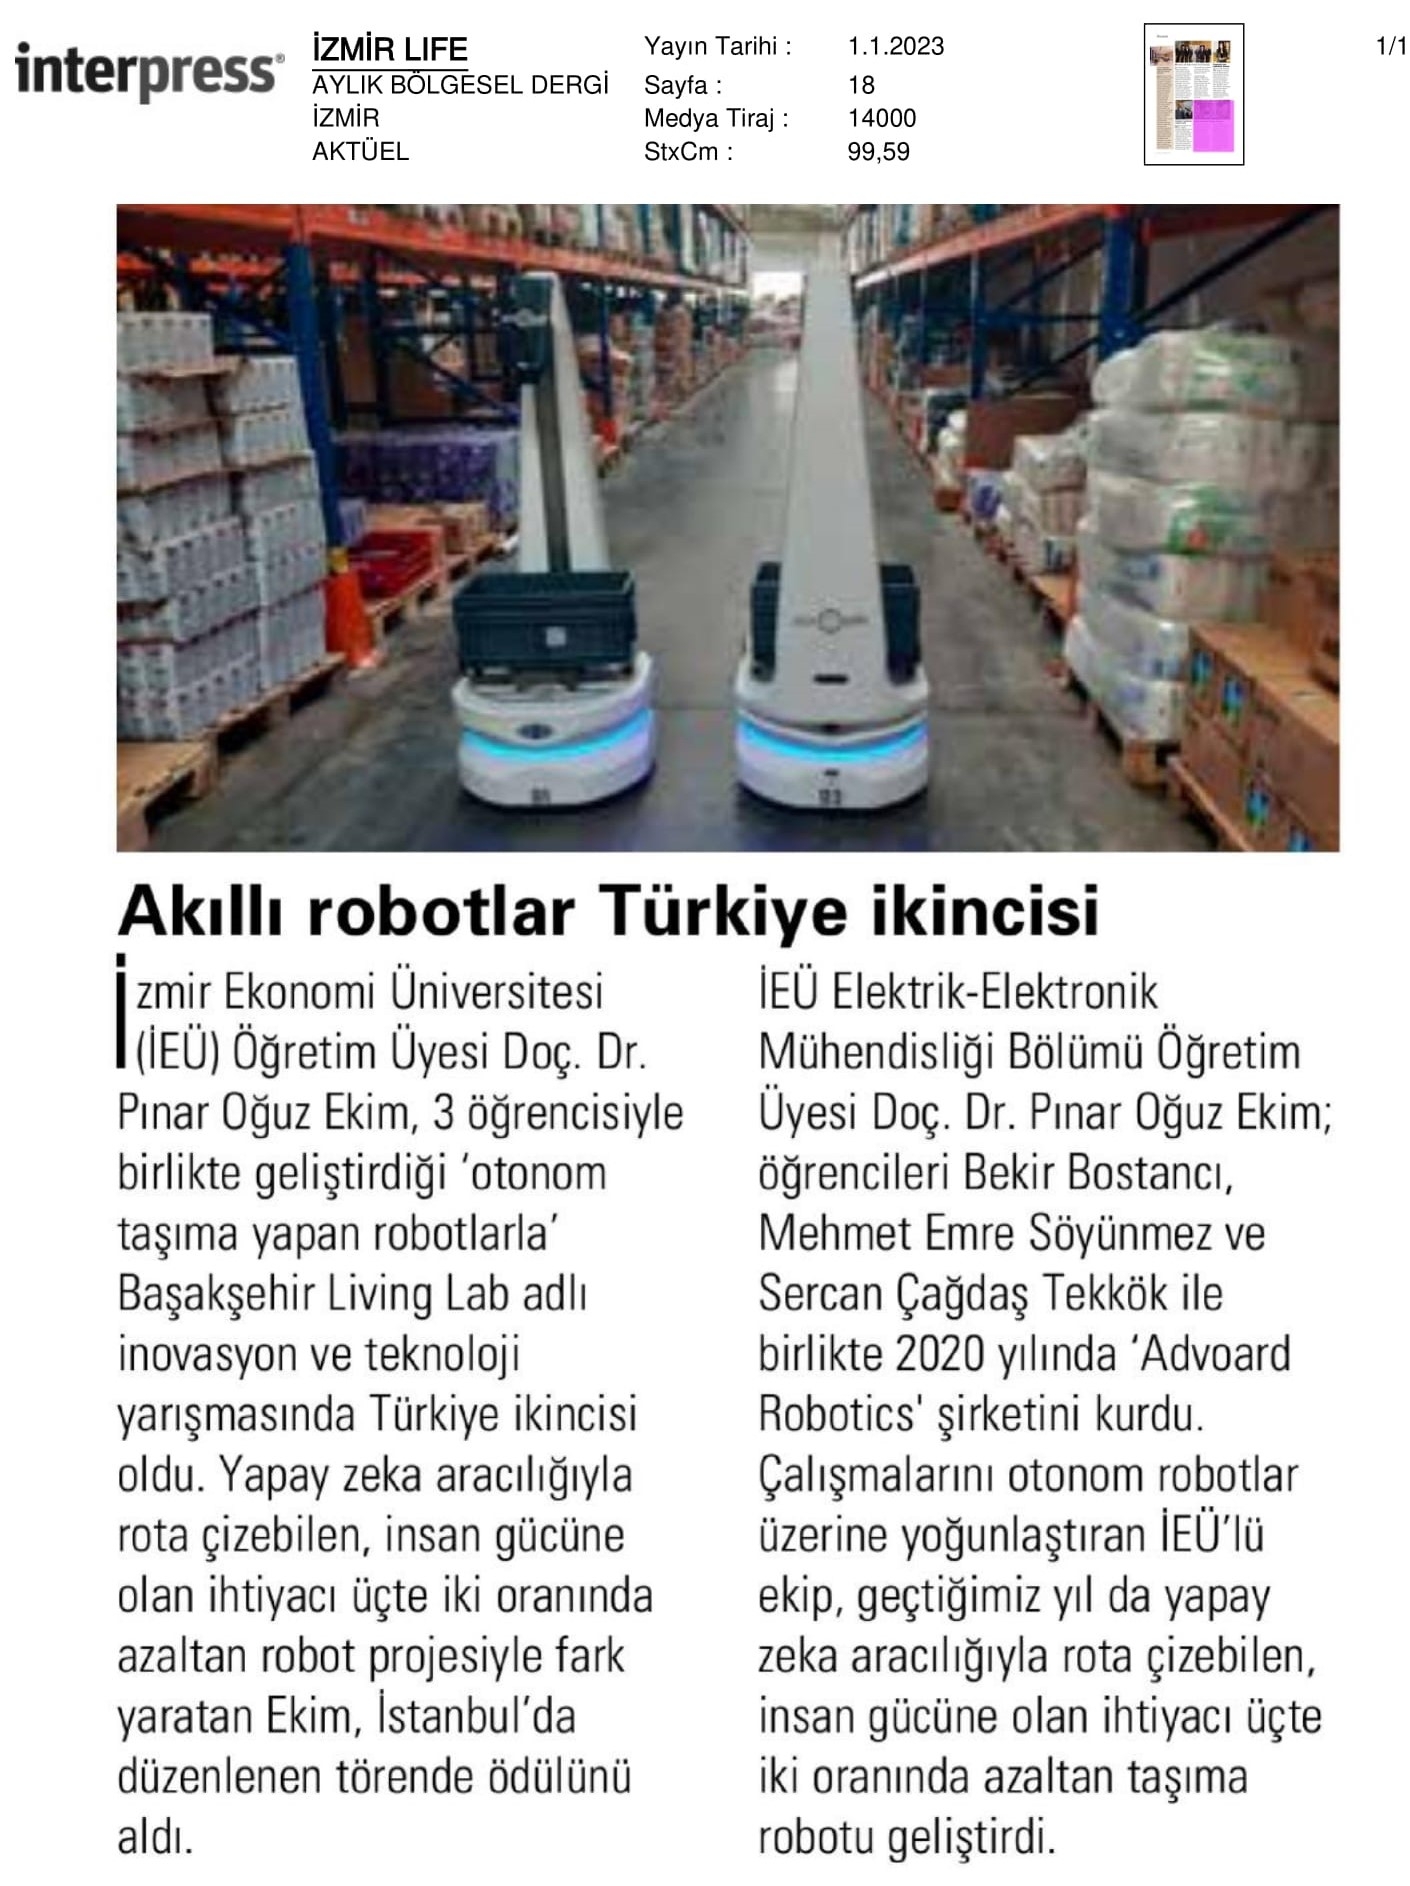 Akıllı Robotlar Türkiye İkincisi